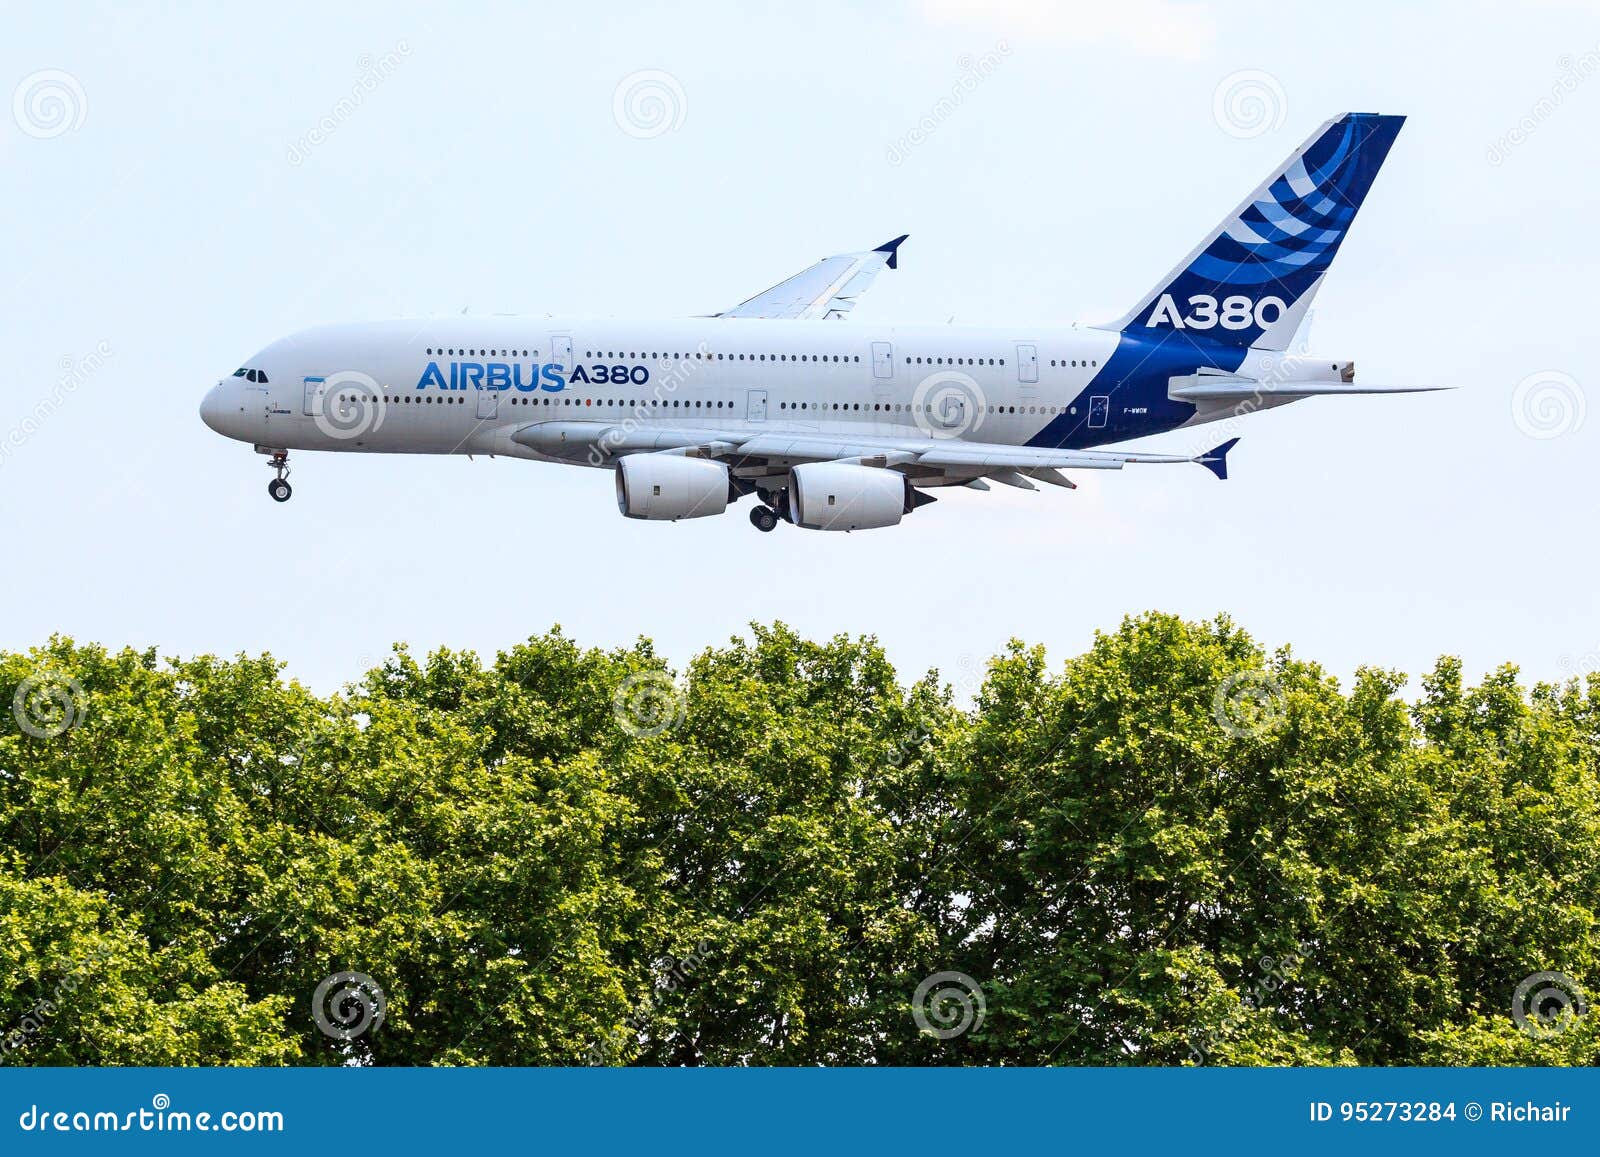 A380 airbus. Airbus A380 στη στολή επιχείρησης που κατεβαίνει κάτω από τα δέντρα στην τελική προσέγγιση